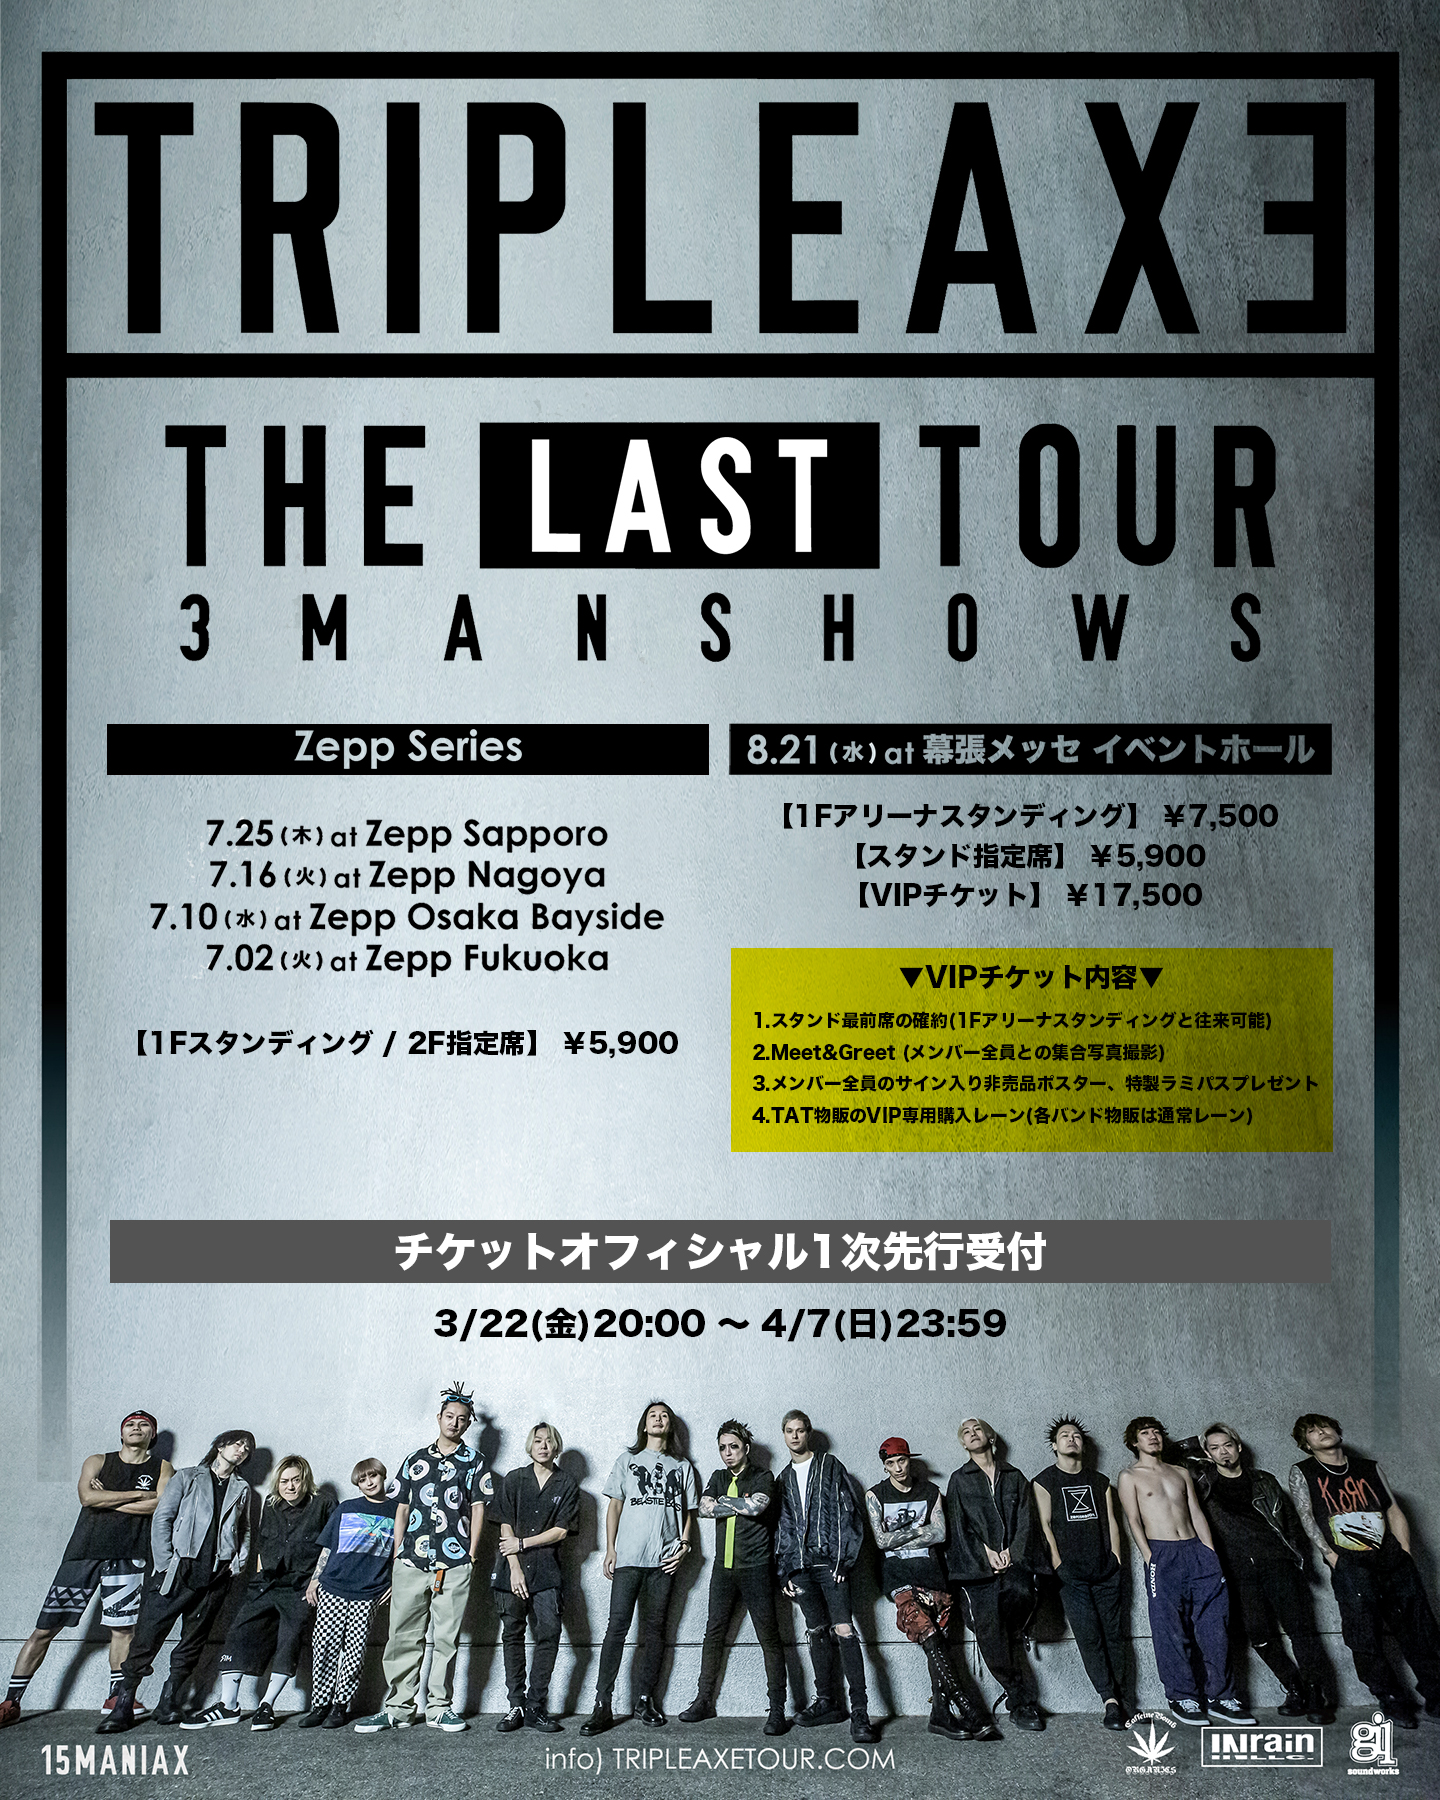 TRIPLE AXE “THE LAST TOUR”